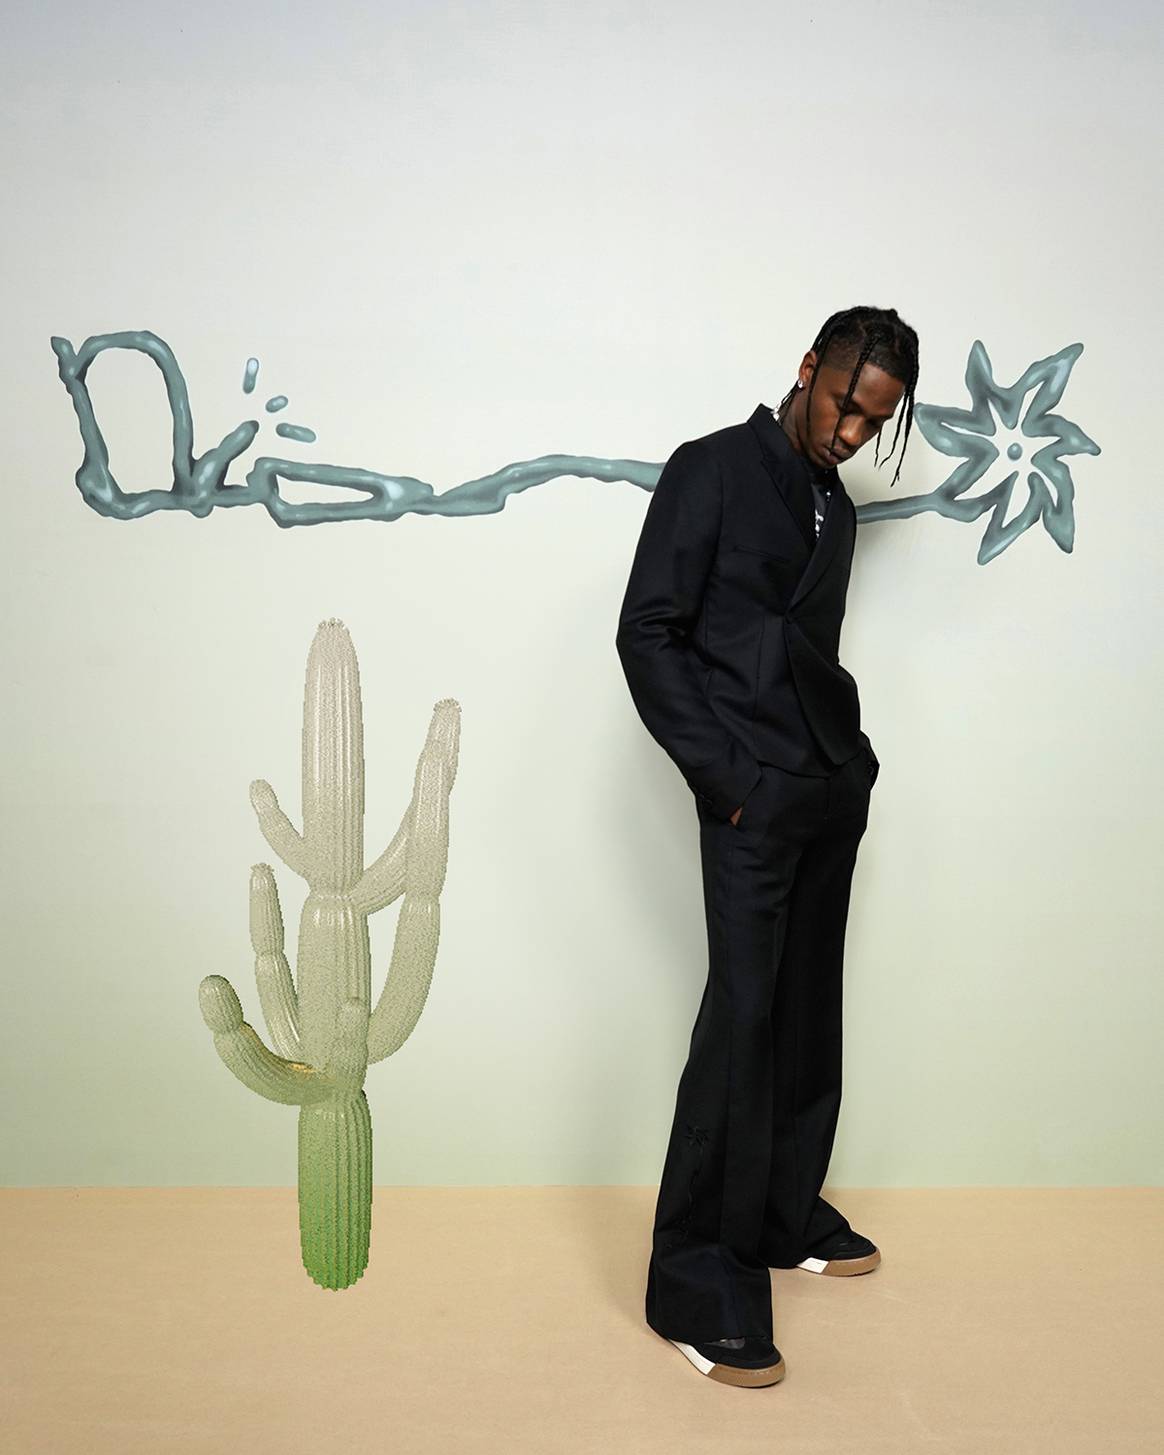 Photo Credits: Travis Scott vestido de Dior Men por Kim Jones, para la presentación de la colección masculina “Cactus Jack Dior” para la temporada Primavera/Verano 2022. Getty Images, por cortesía de Dior.